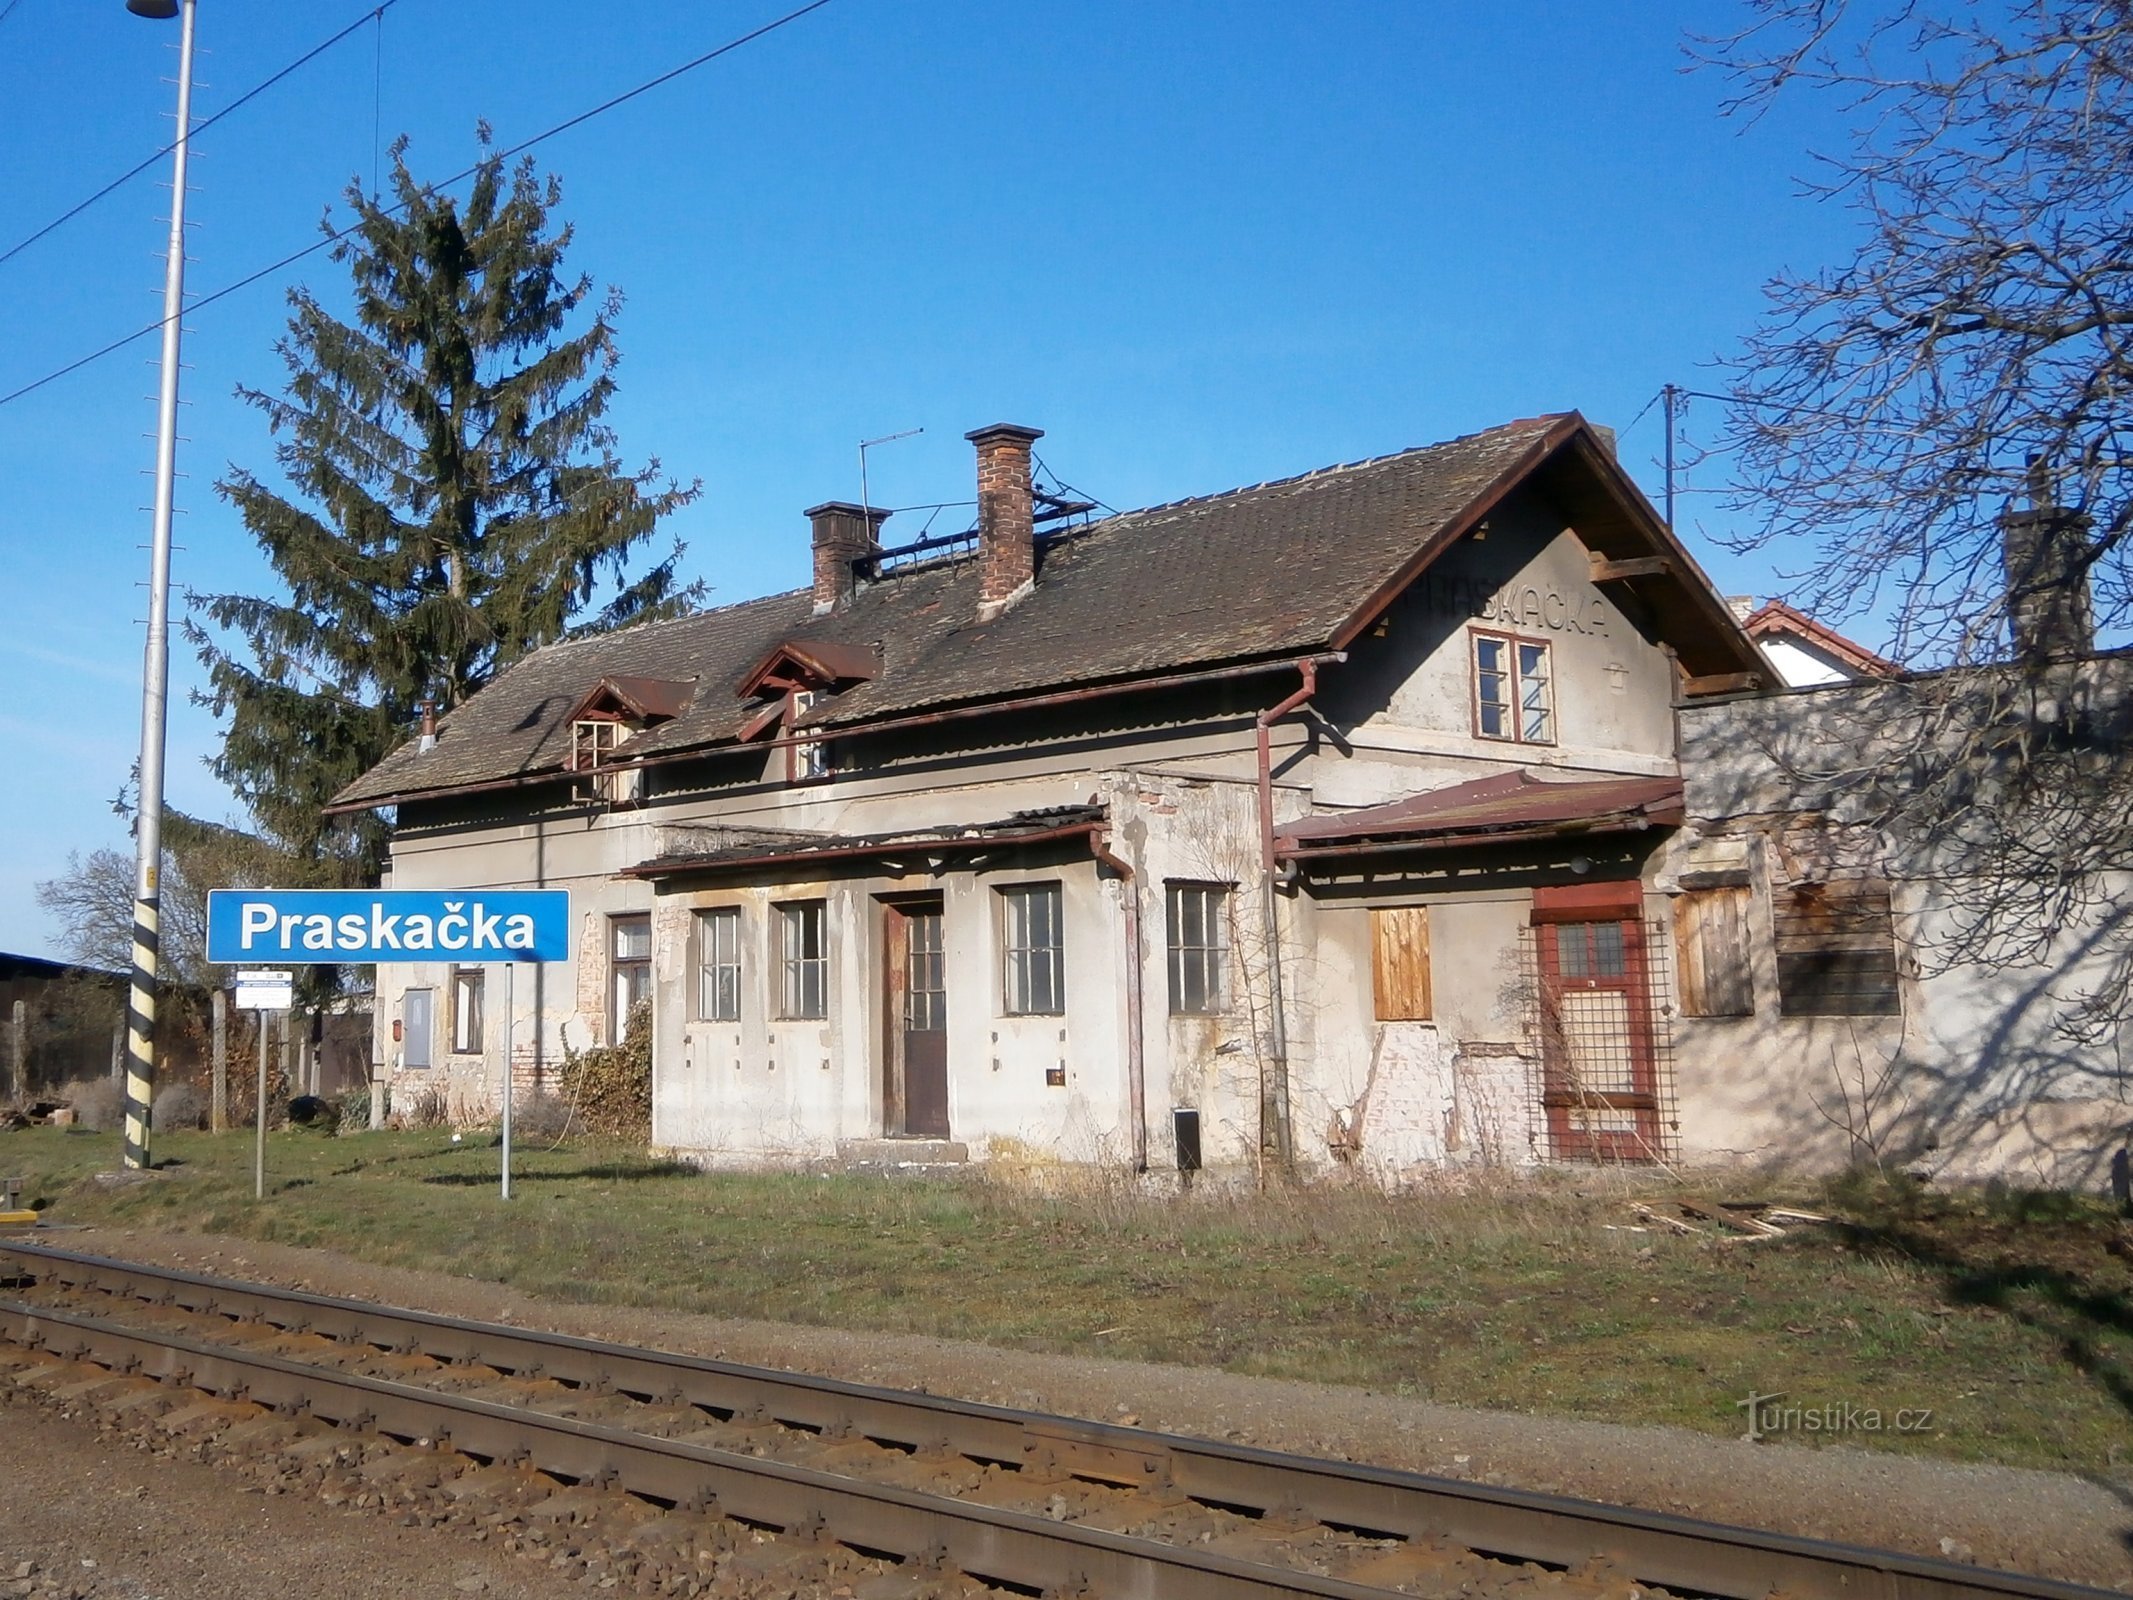 Den gamla järnvägsstationen i Praskačka